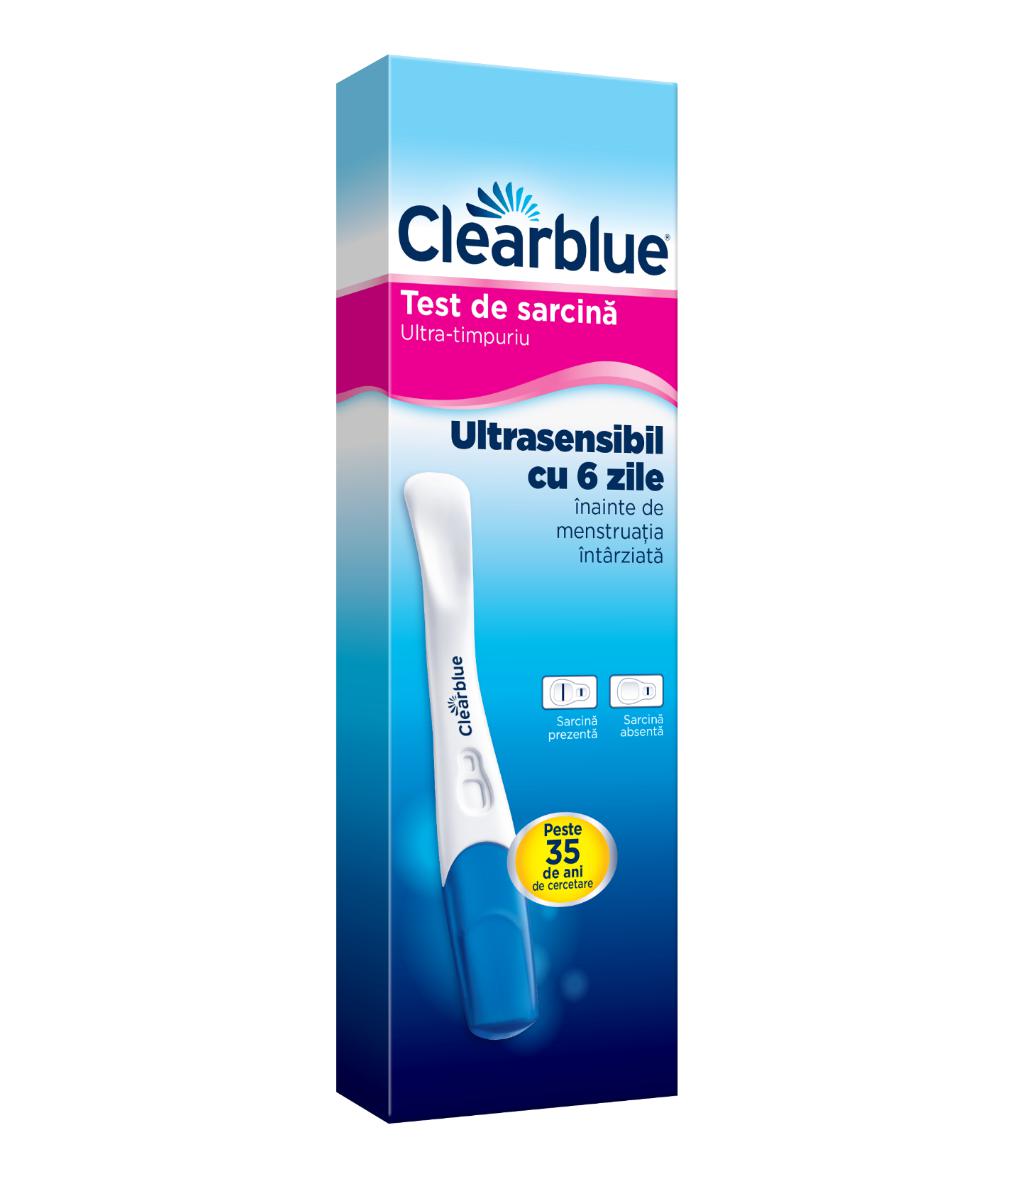 Teste - Clearblue Test de sarcina ultra-timpuriu , sinapis.ro